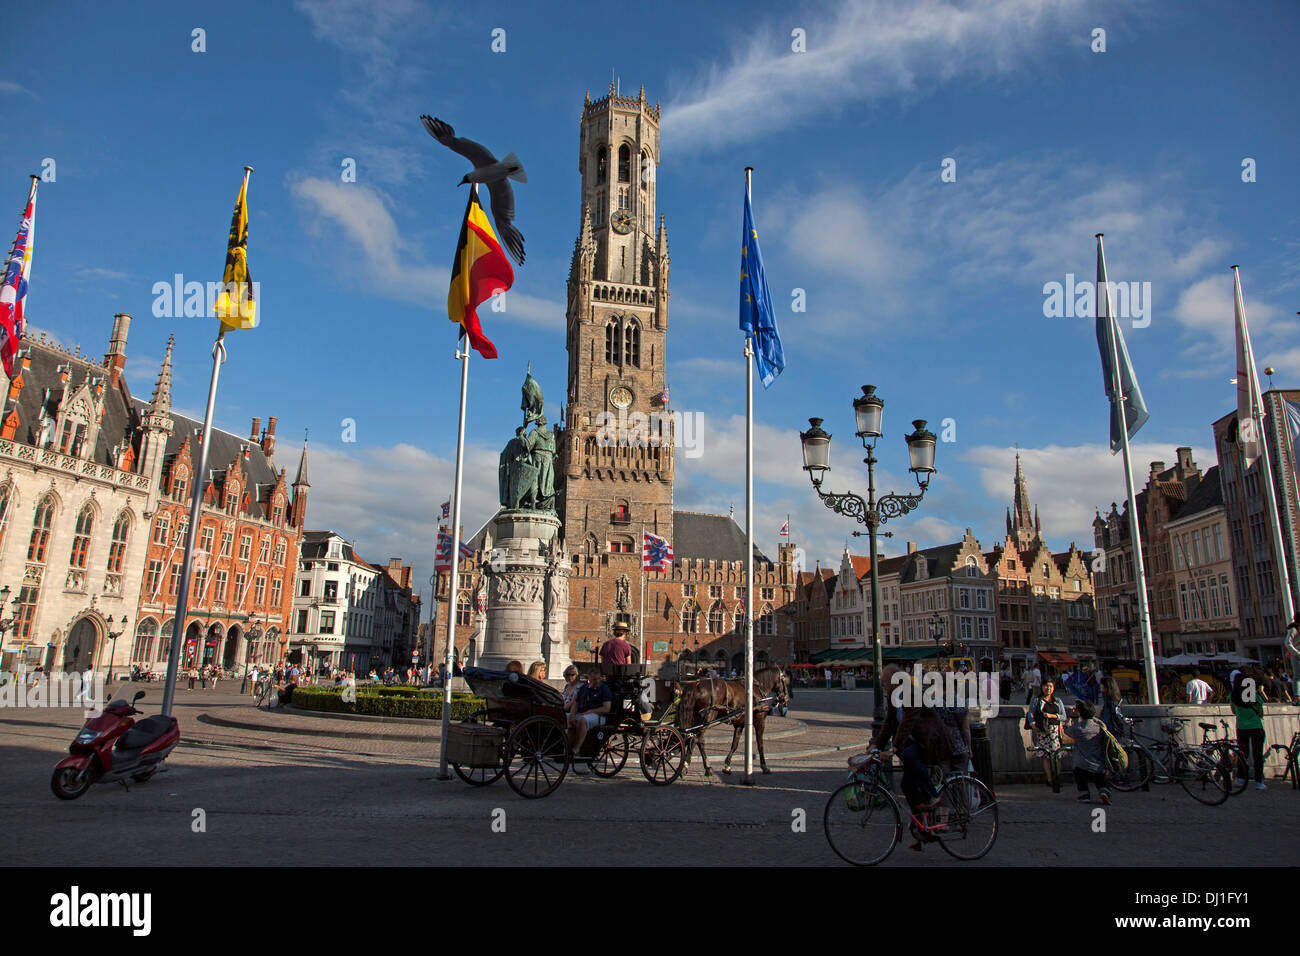 La place du marché Grote Markt et du beffroi de Bruges, Belgique Banque D'Images